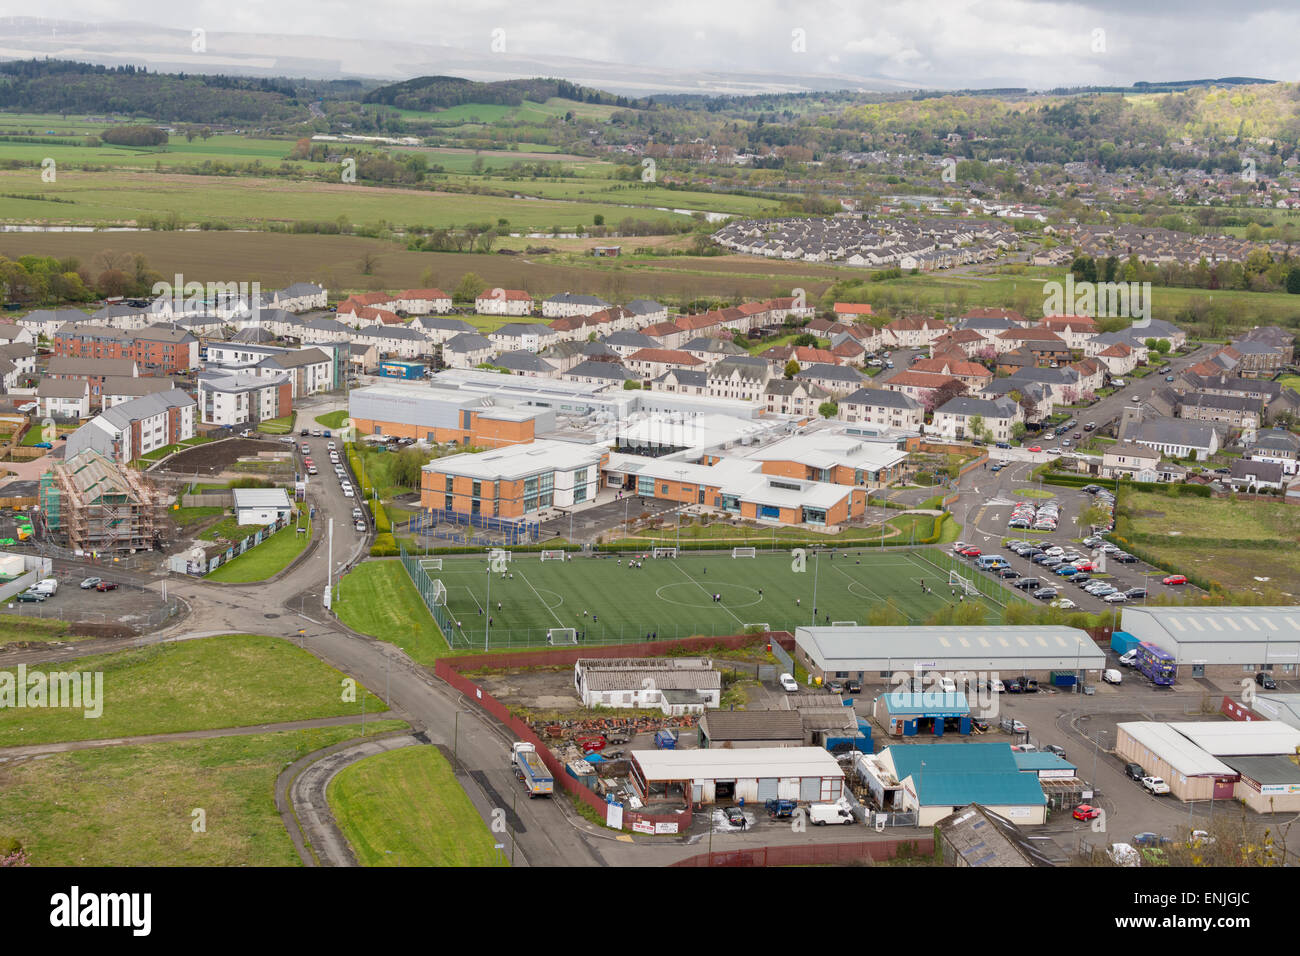 La rigenerazione urbana, Scozia - Comunità Raploch Campus e sviluppi di alloggiamento Foto Stock